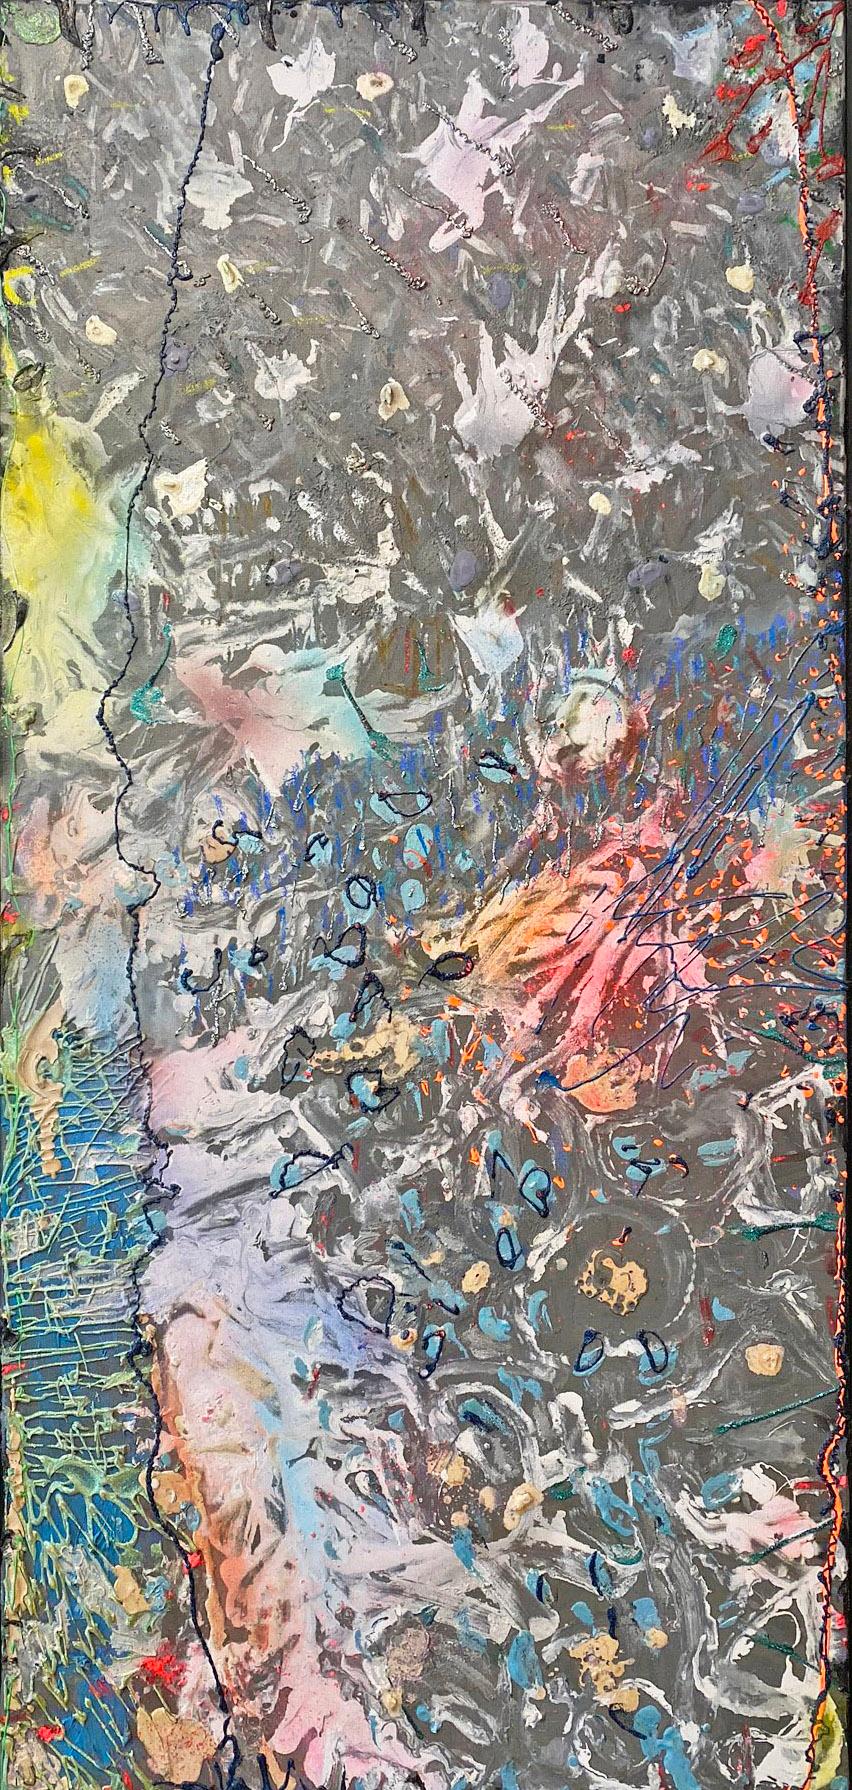 das Herz von Alcamo" von Stanley Boxer, 1989. Öl und Mischtechnik auf Leinwand, 51 x 24 Zoll. / Rahmen: 52.25 x 25.25 in.  Dieses Impasto-Gemälde hat eine aktive Oberfläche, die mit definierten Pinselstrichen in einer Farbpalette aus Grau, Gelb,